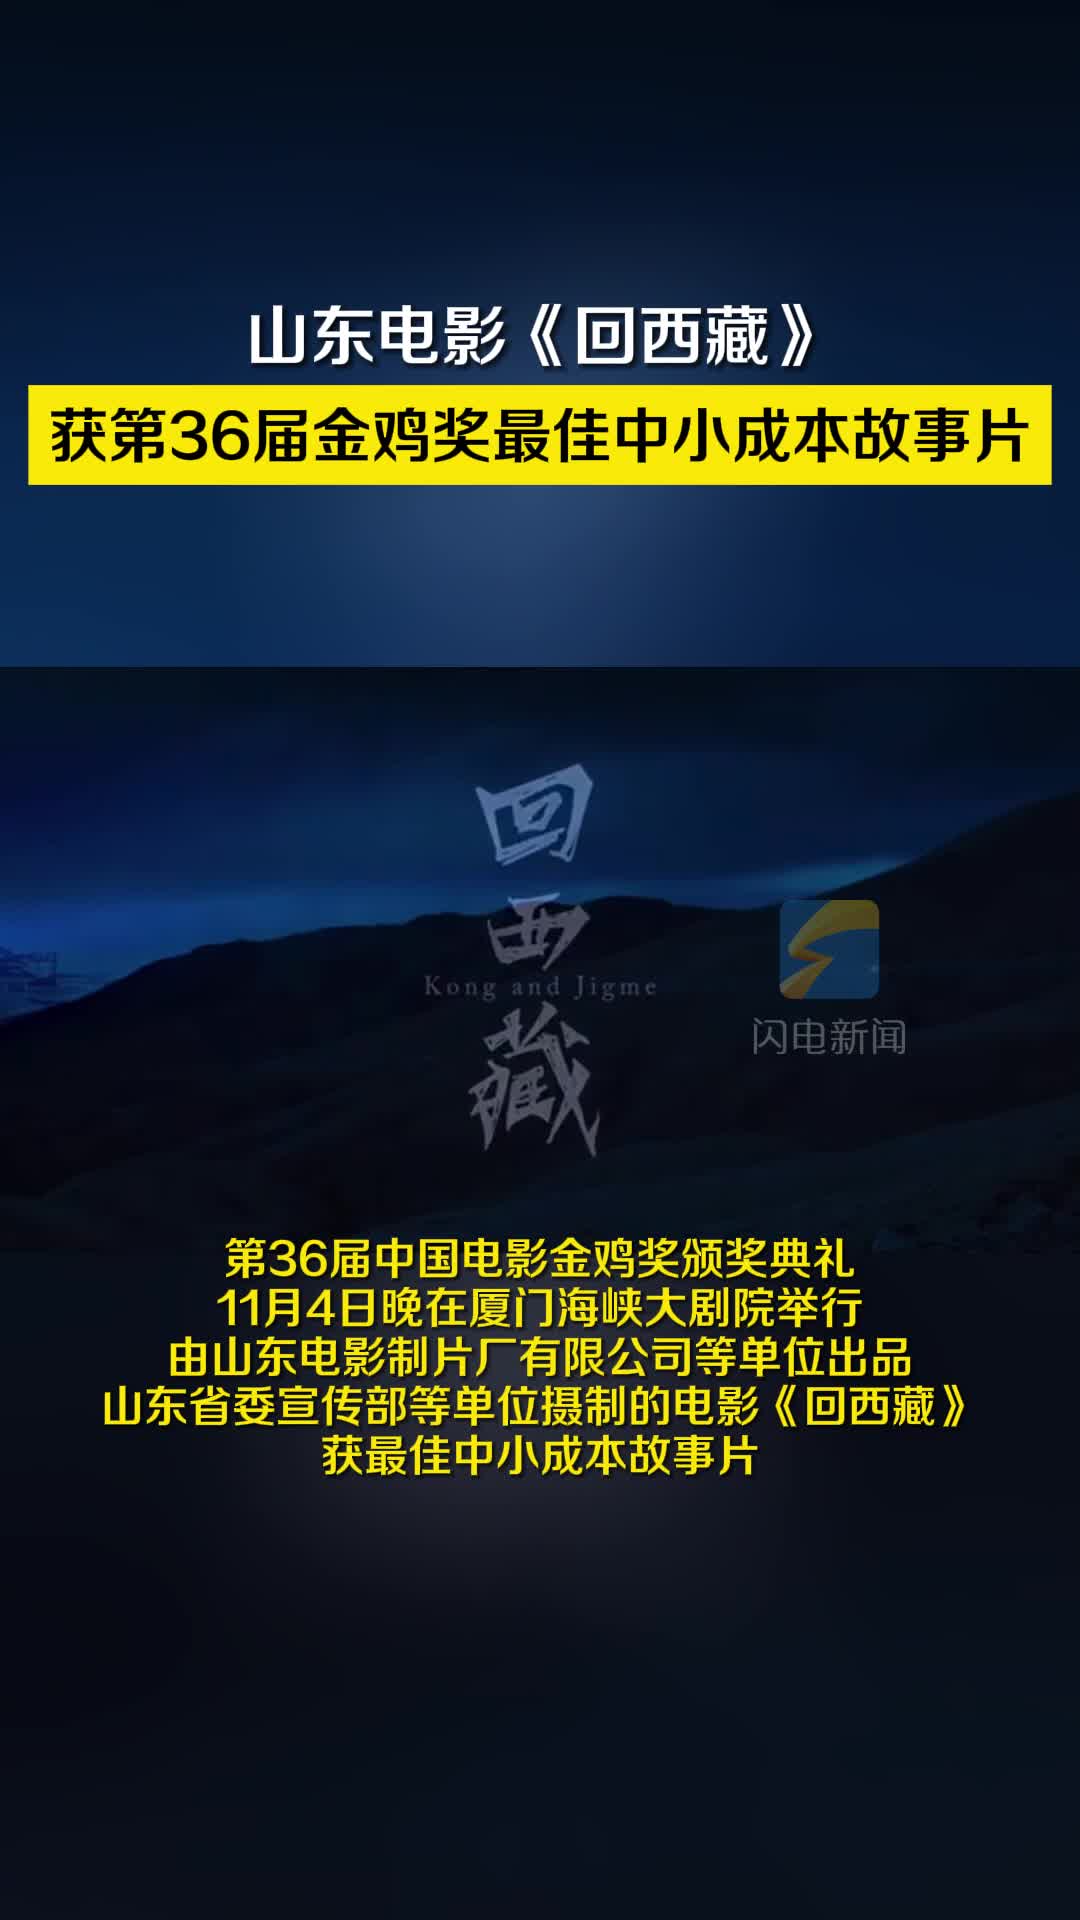 山东电影《回西藏》获第36届金鸡奖最佳中小成本故事片